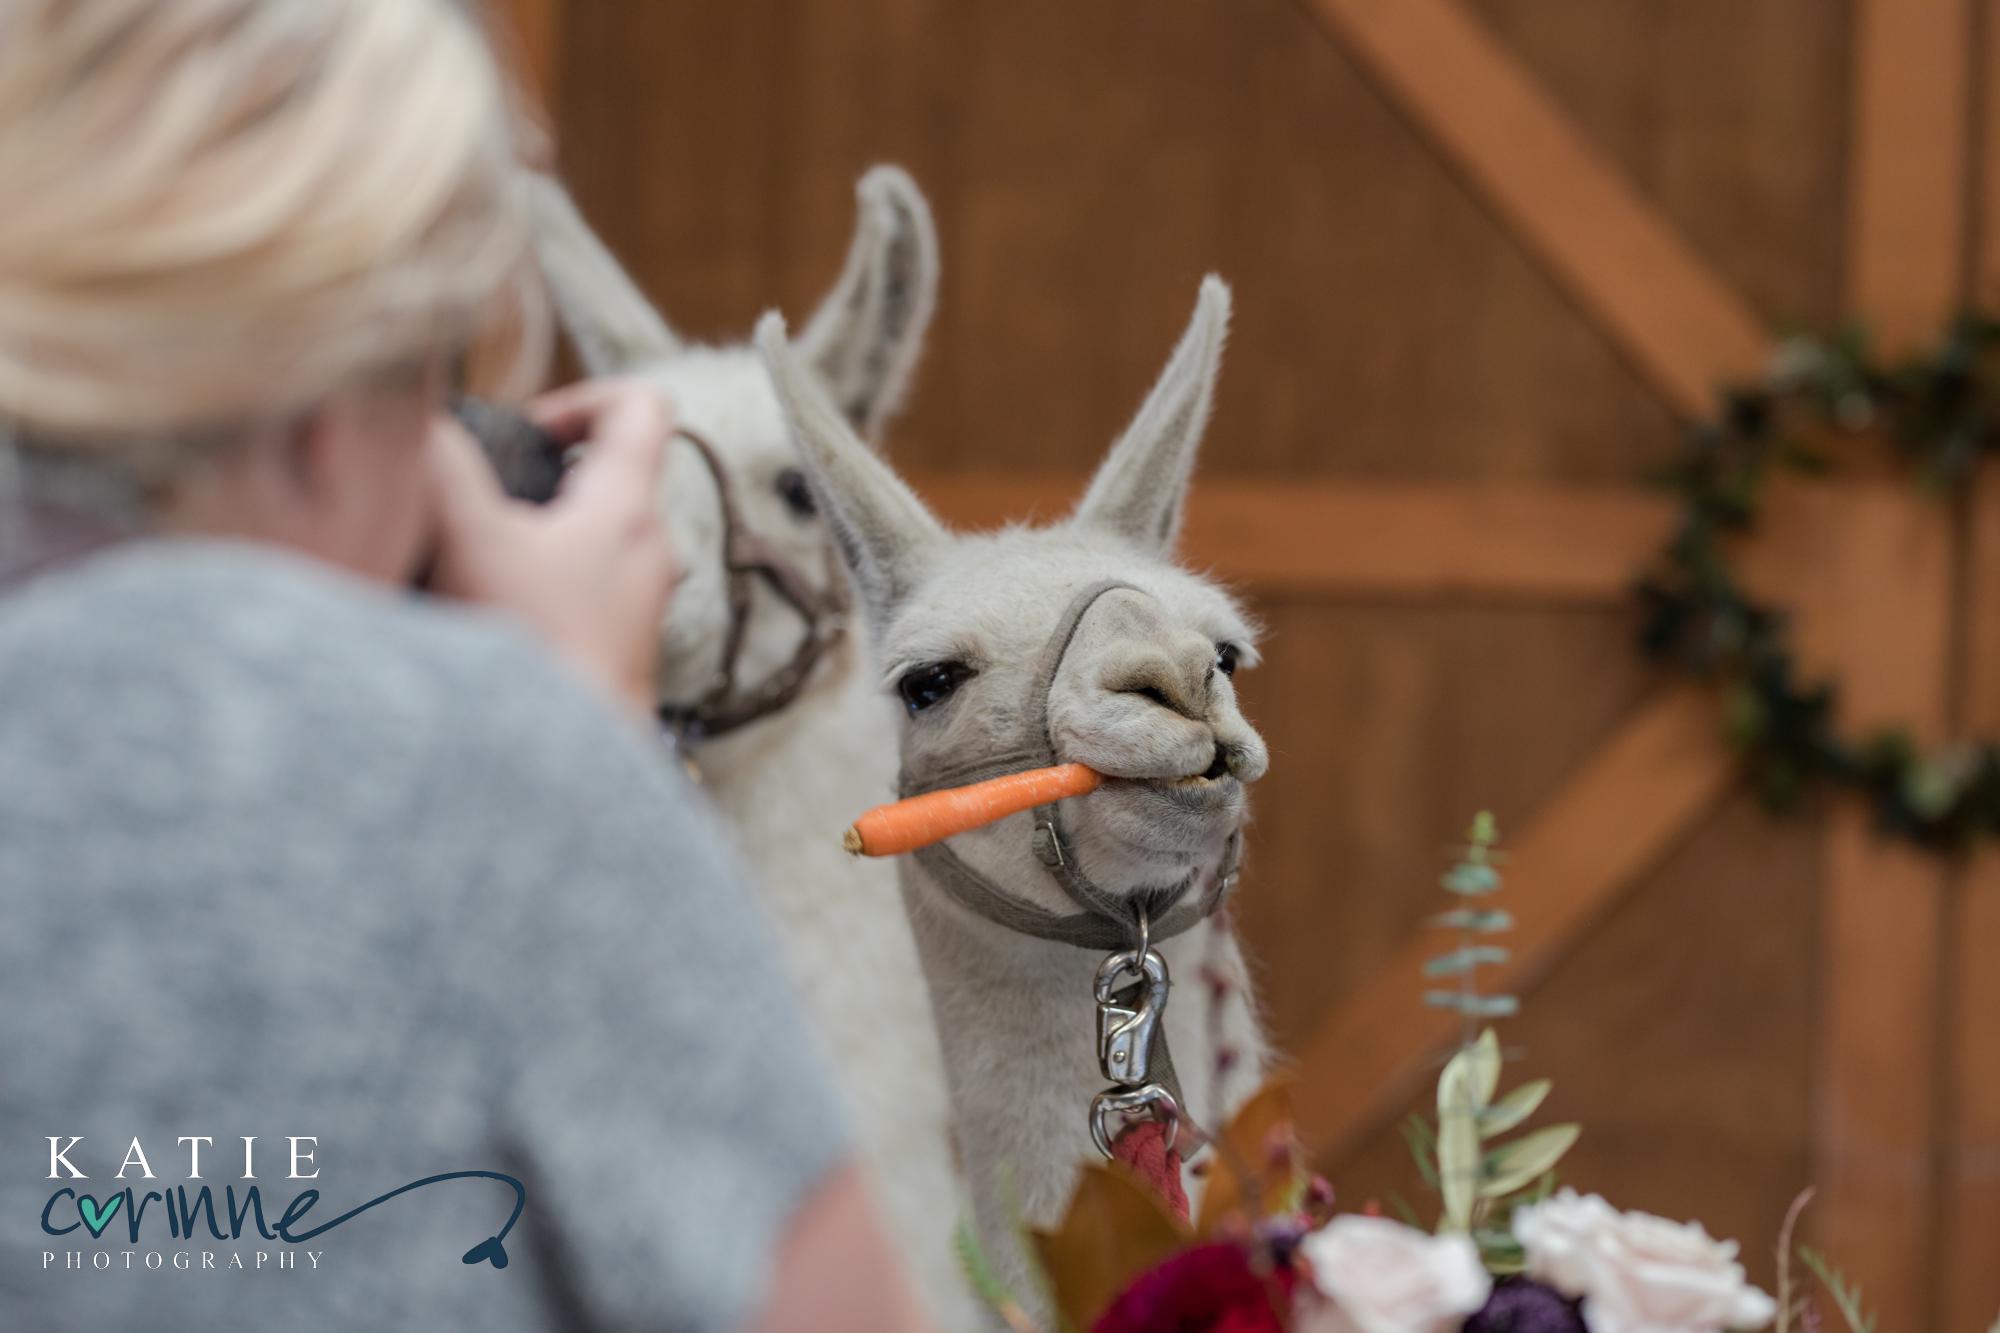 Llama eating a carrot at a wedding